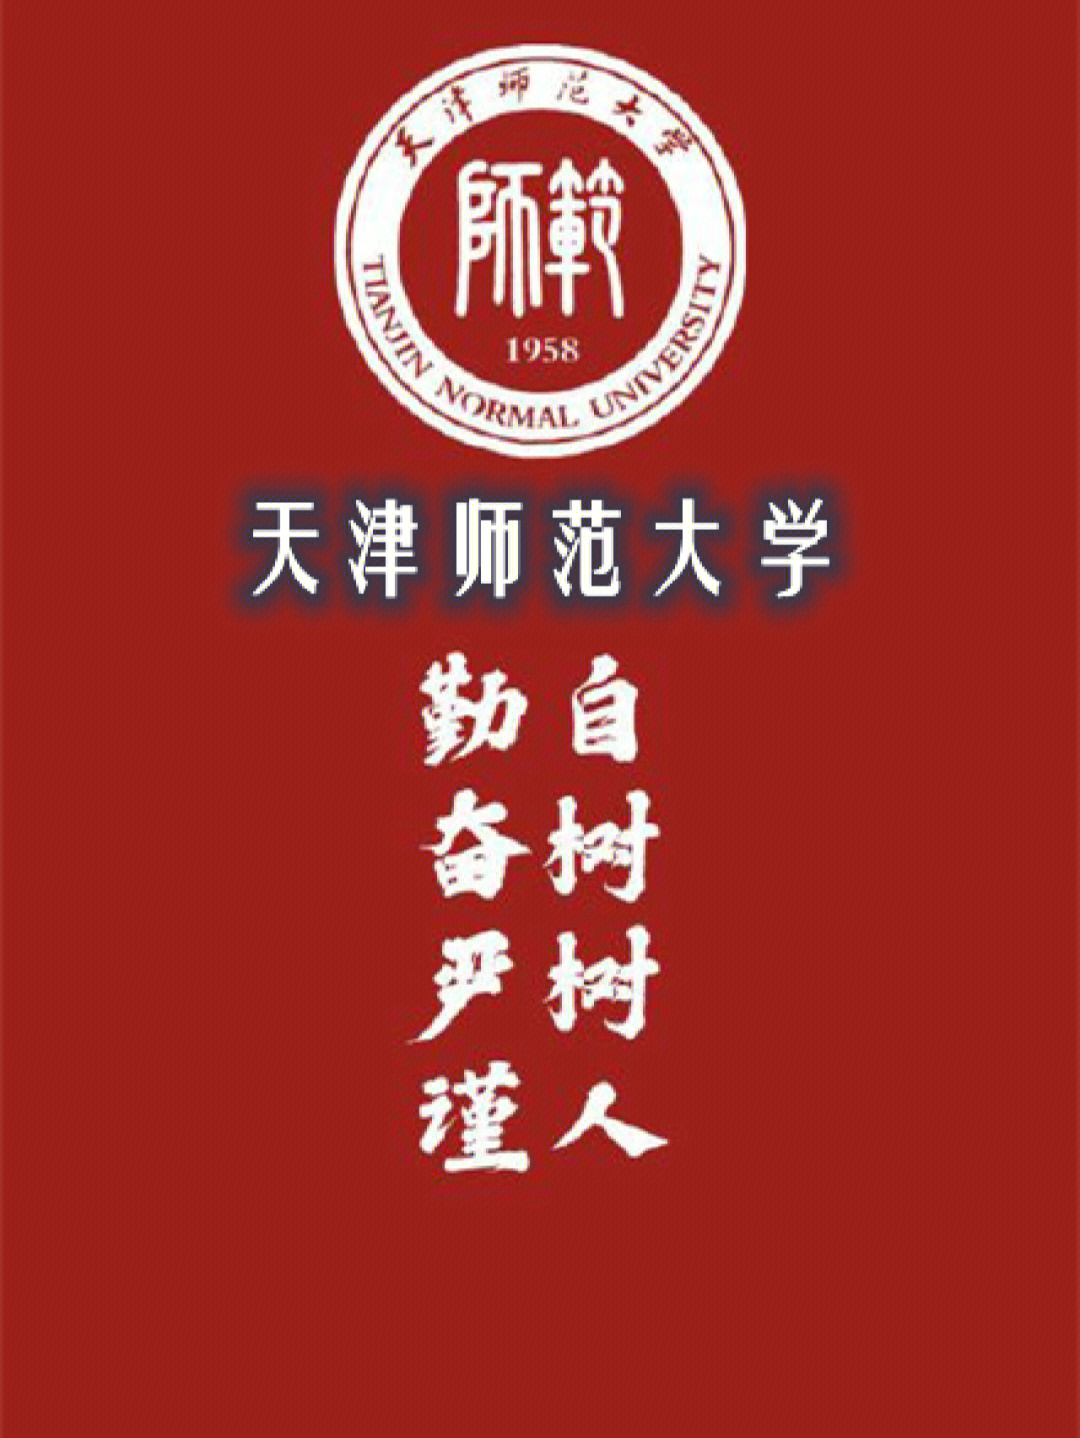 天津师范大学校徽壁纸图片